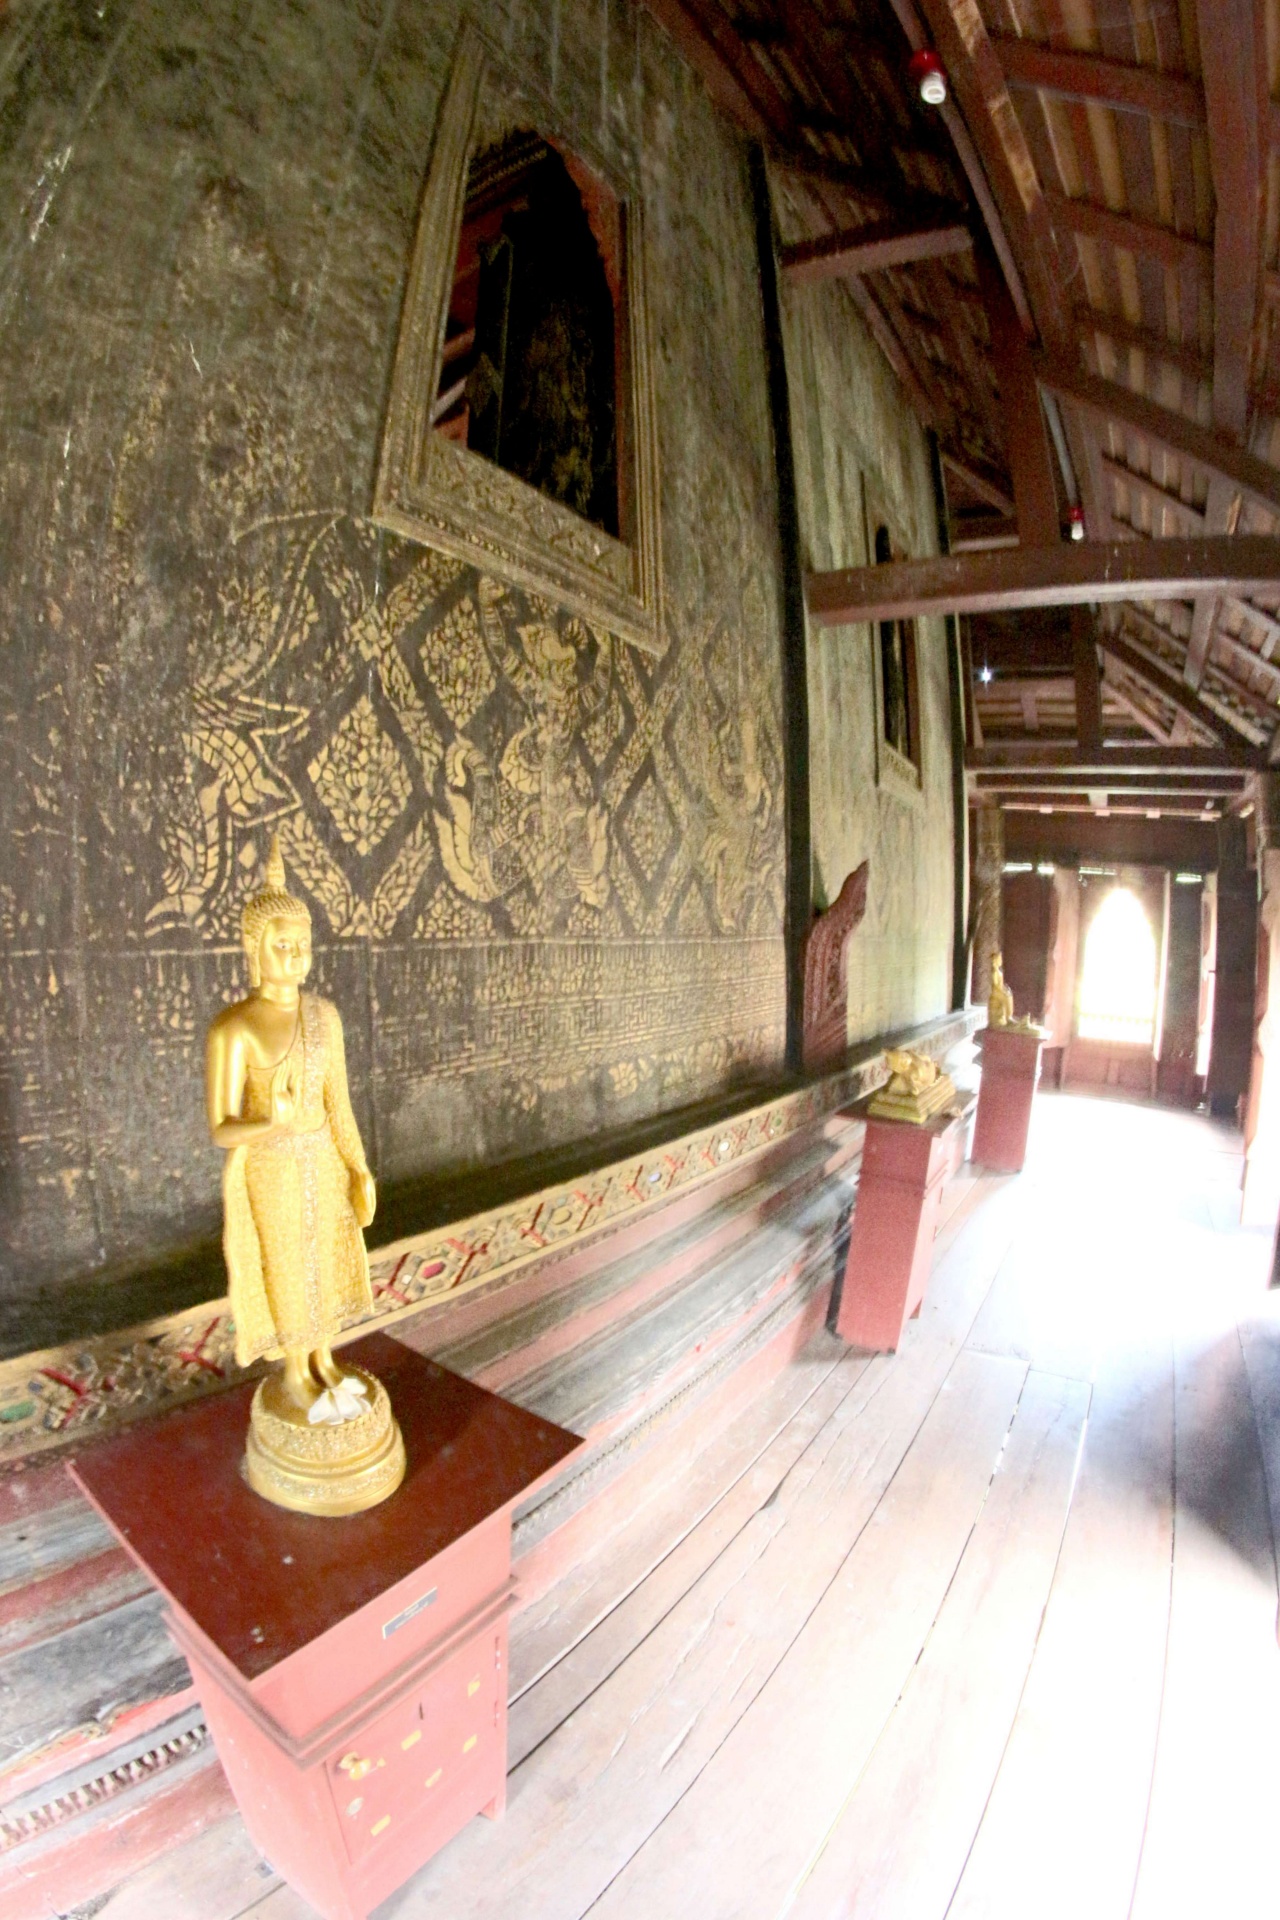 Wat Thung Si Muang In Ubon Ratchathani